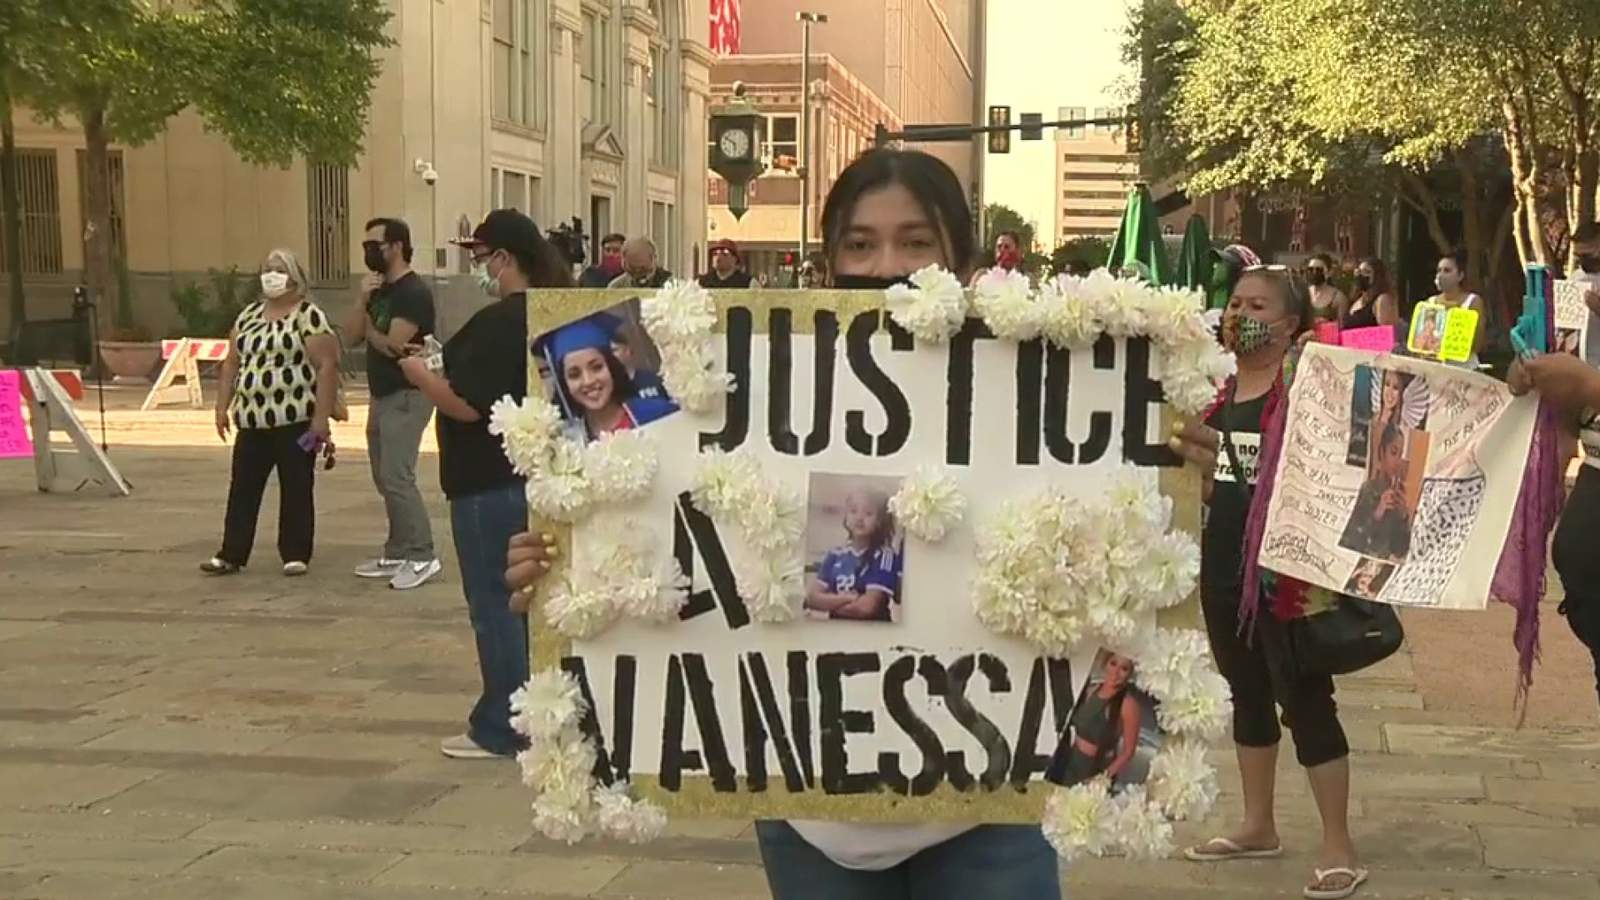 Rep. Joaquin Castro attends Vanessa Guillen vigil at Main Plaza in San Antonio